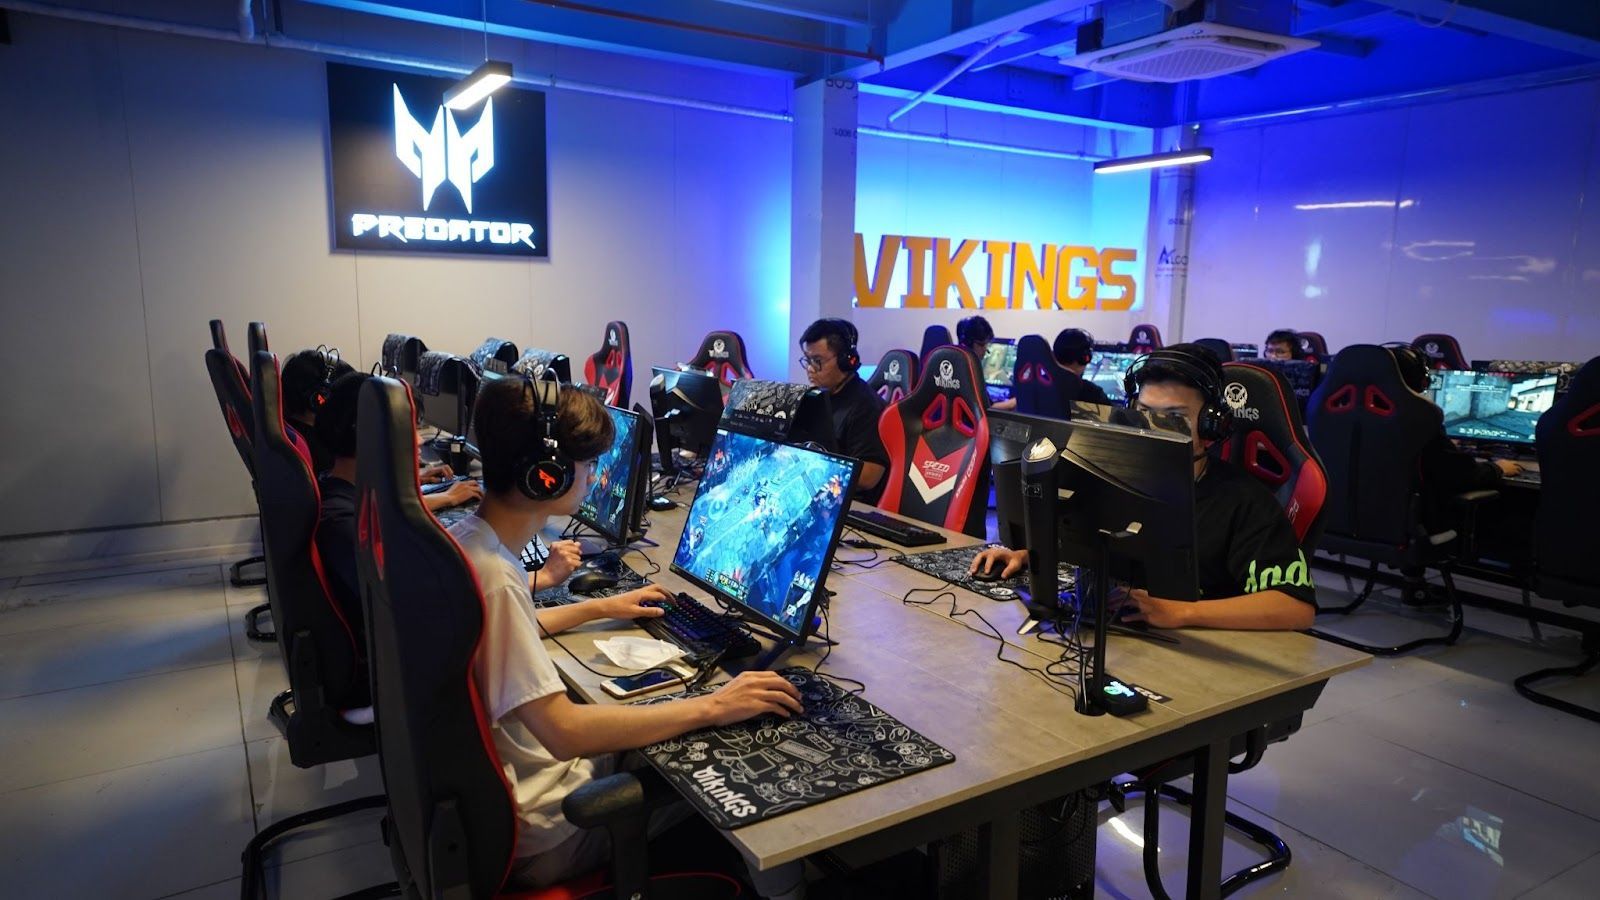 Vikings Esports Arena khai trương cơ sở mới tại Giải Phóng - Hà Nội với khu vực tổ chức sự kiện hoành tráng